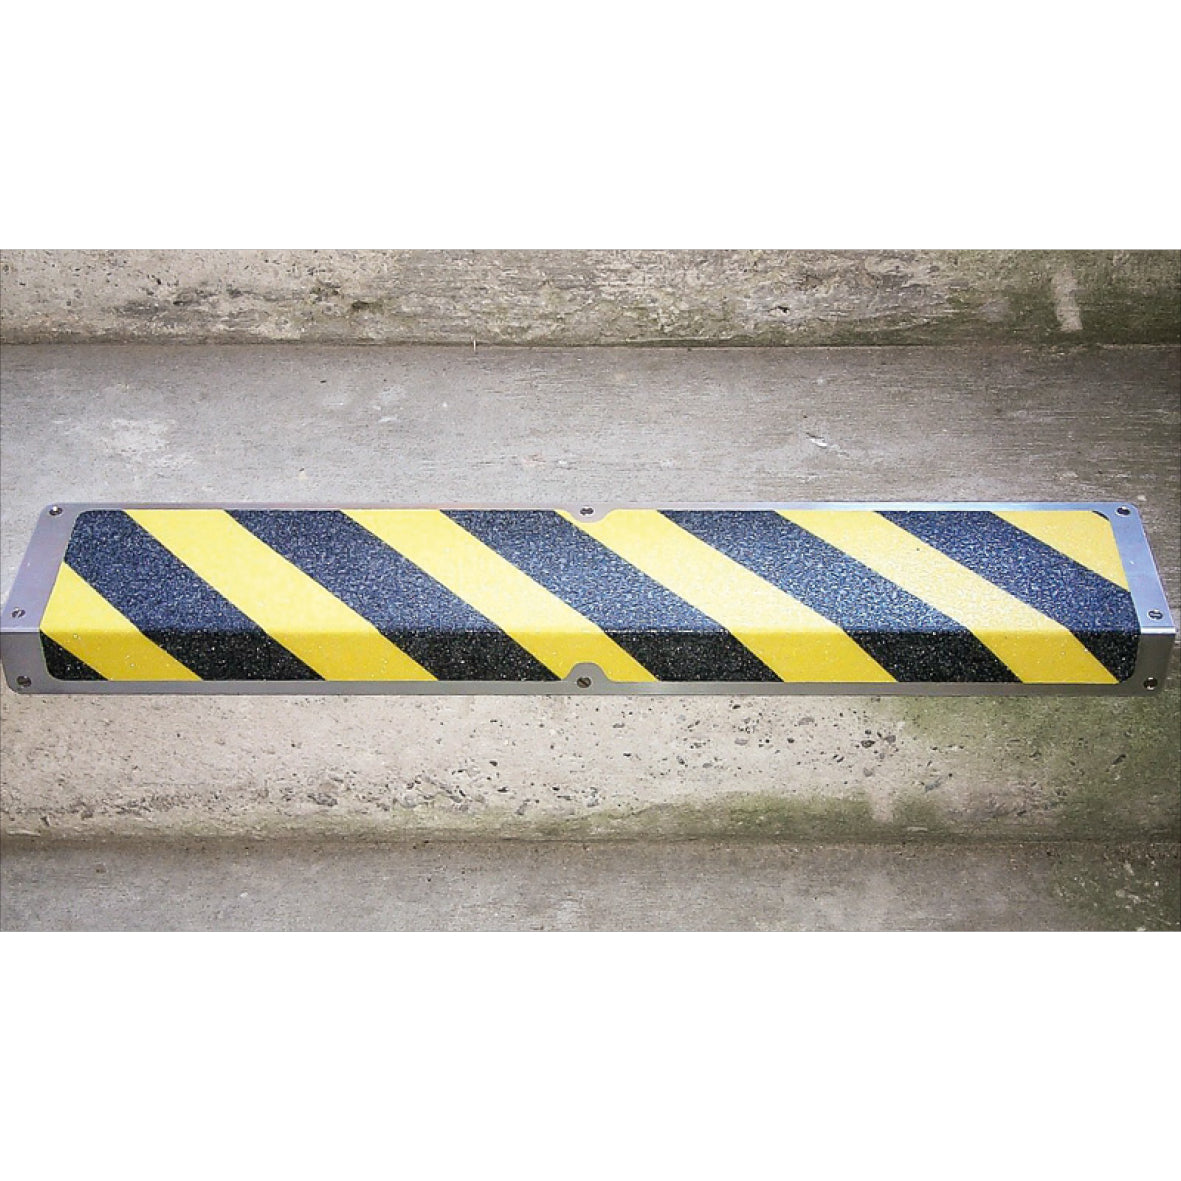 Antirutsch Treppkante Alu, schwarz/gelb 120x1000x45mm